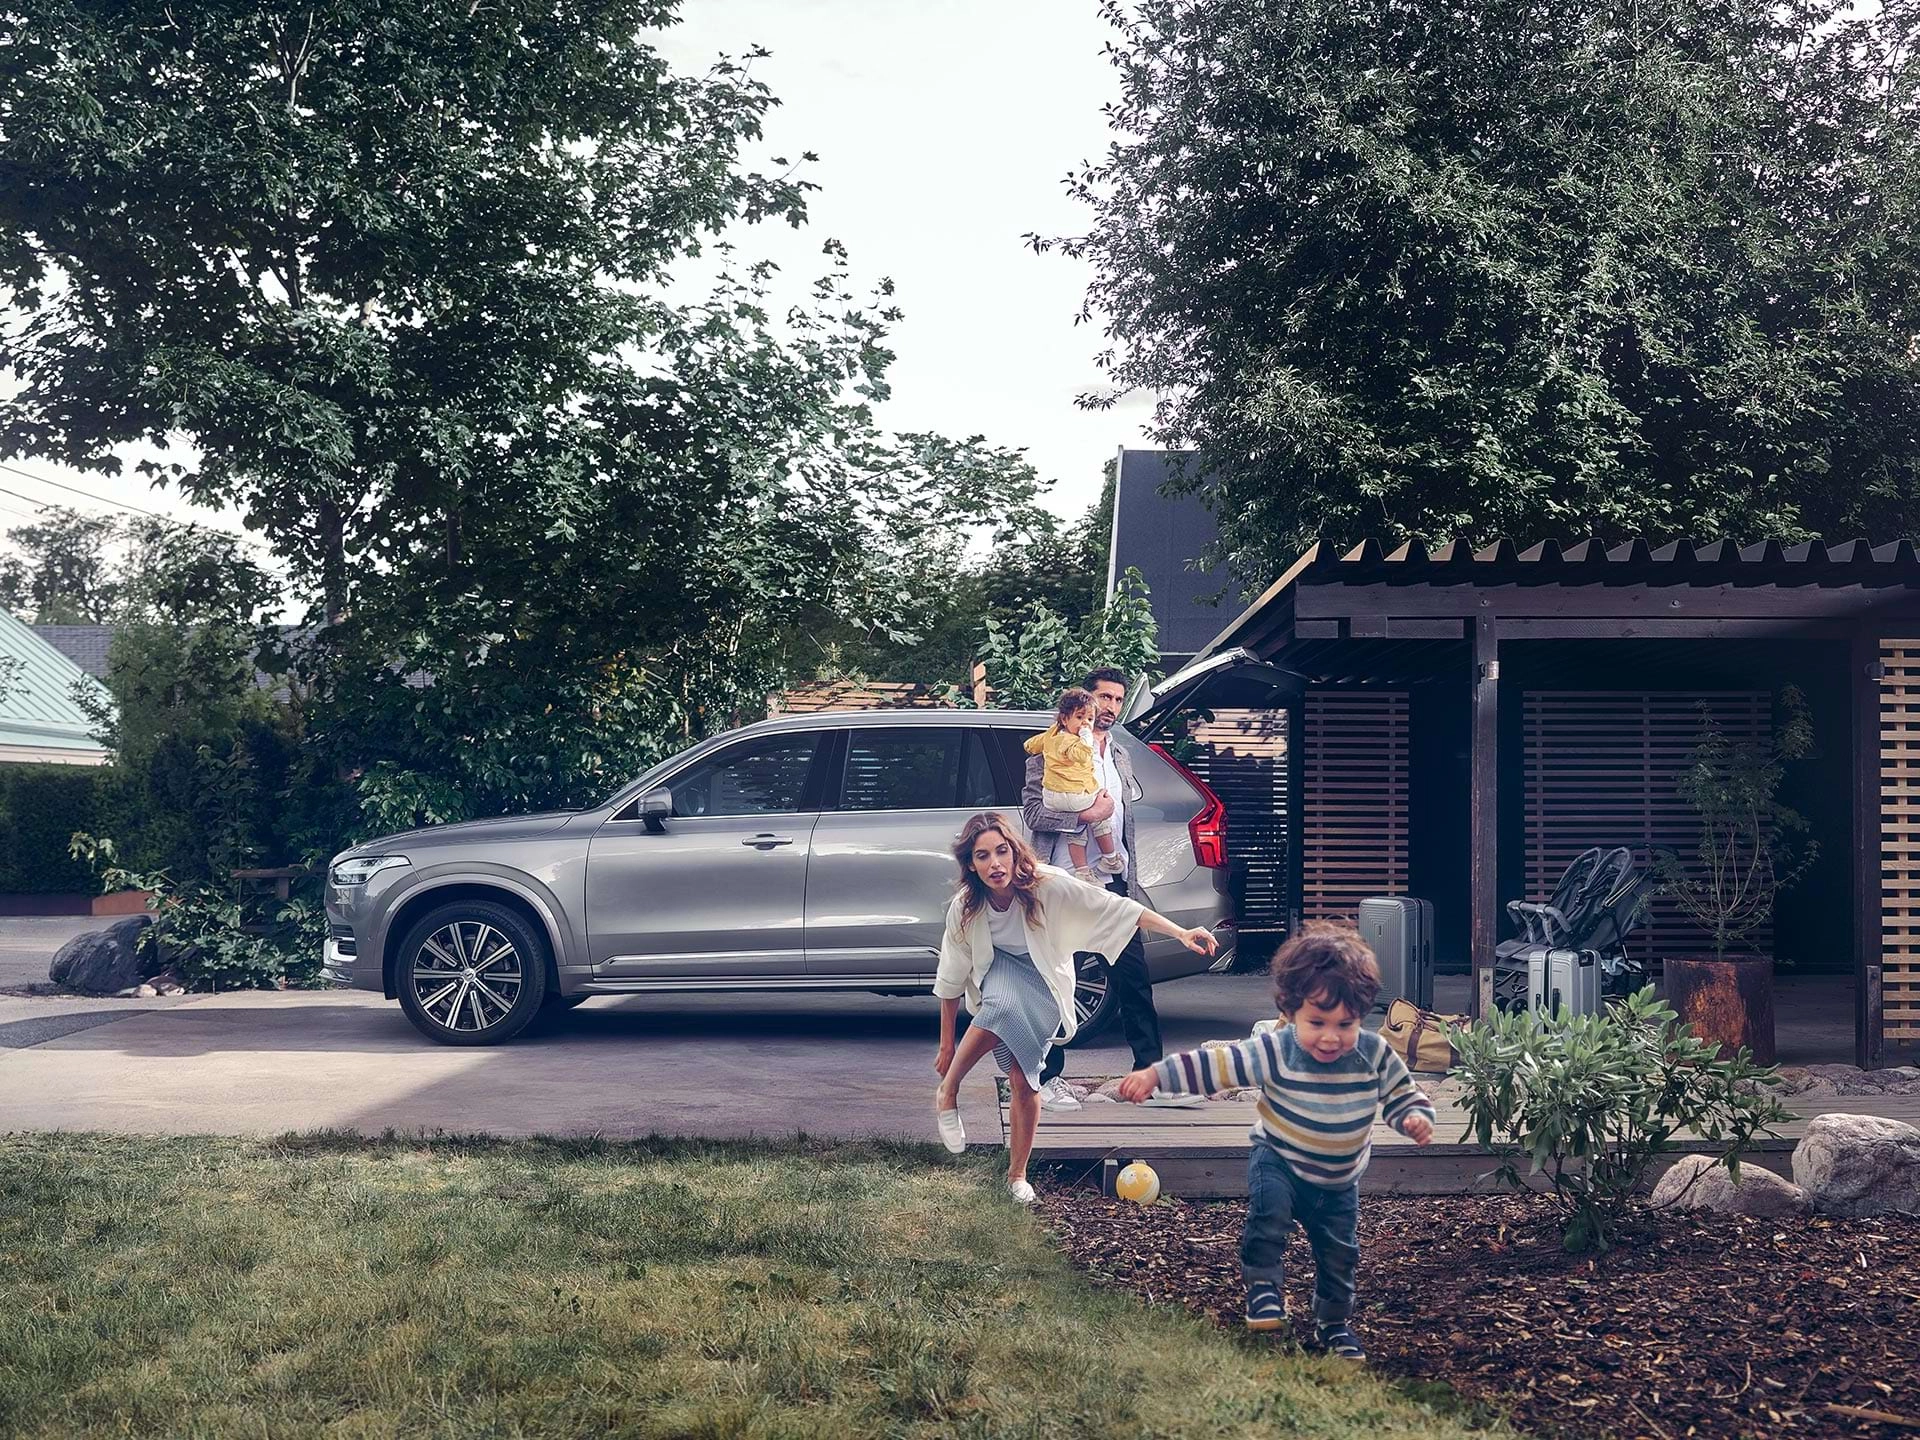 Terwijl een gezin uit een buitenwijk zich voorbereidt op een rit met hun Volvo SUV, rent een kind door de tuin, achtervolgd door zijn moeder.